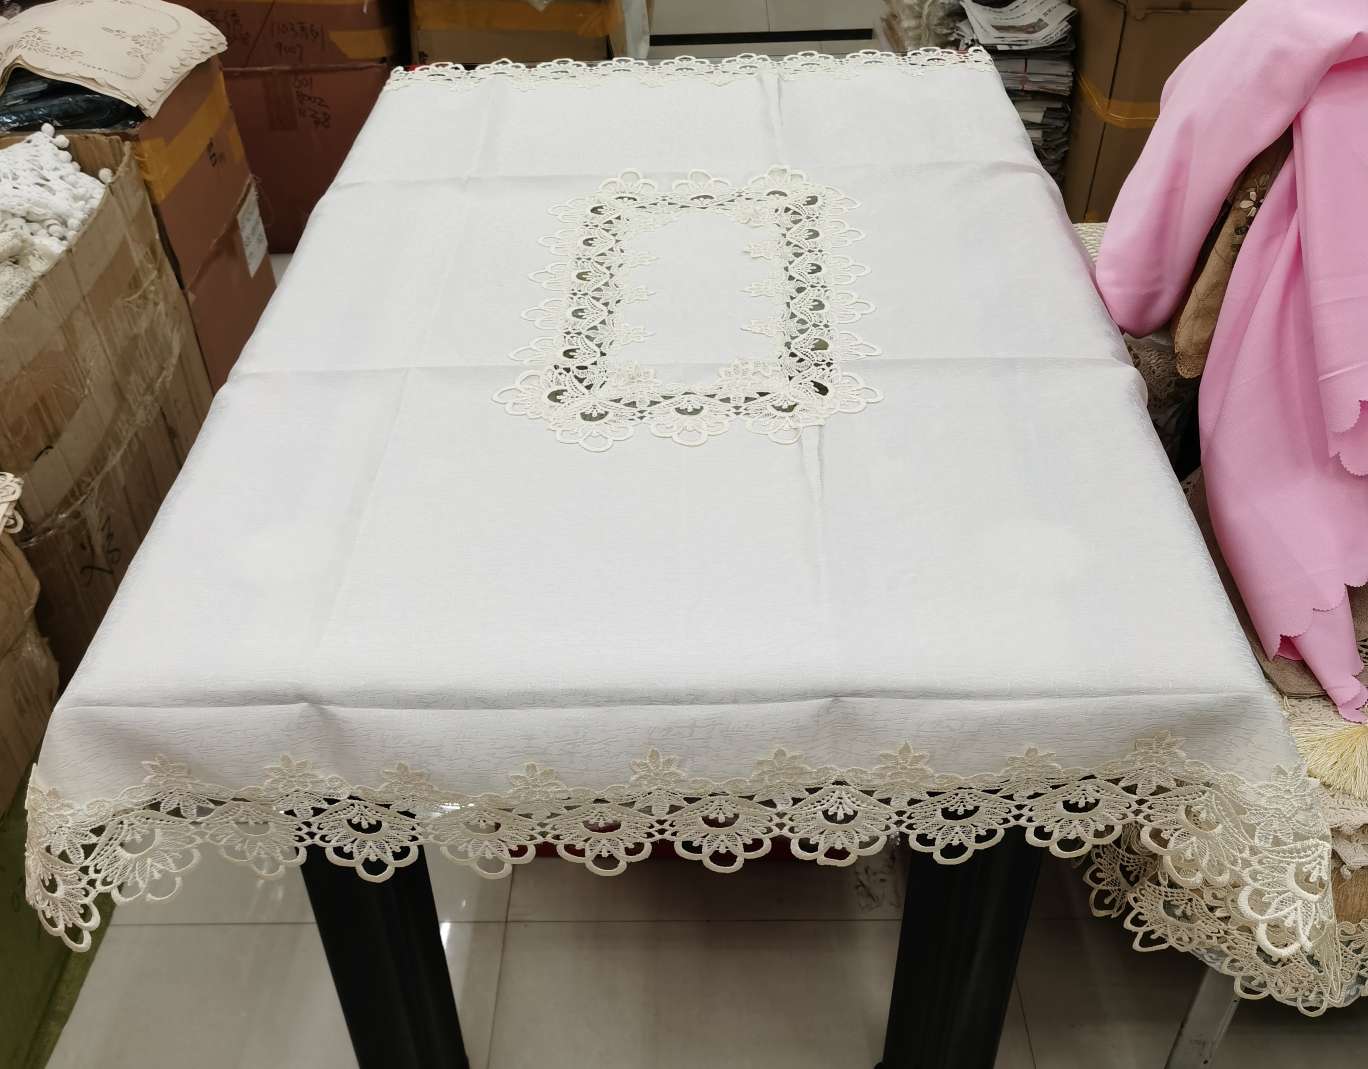 水溶花边提花贡缎桌布。尺寸120×150。细节图